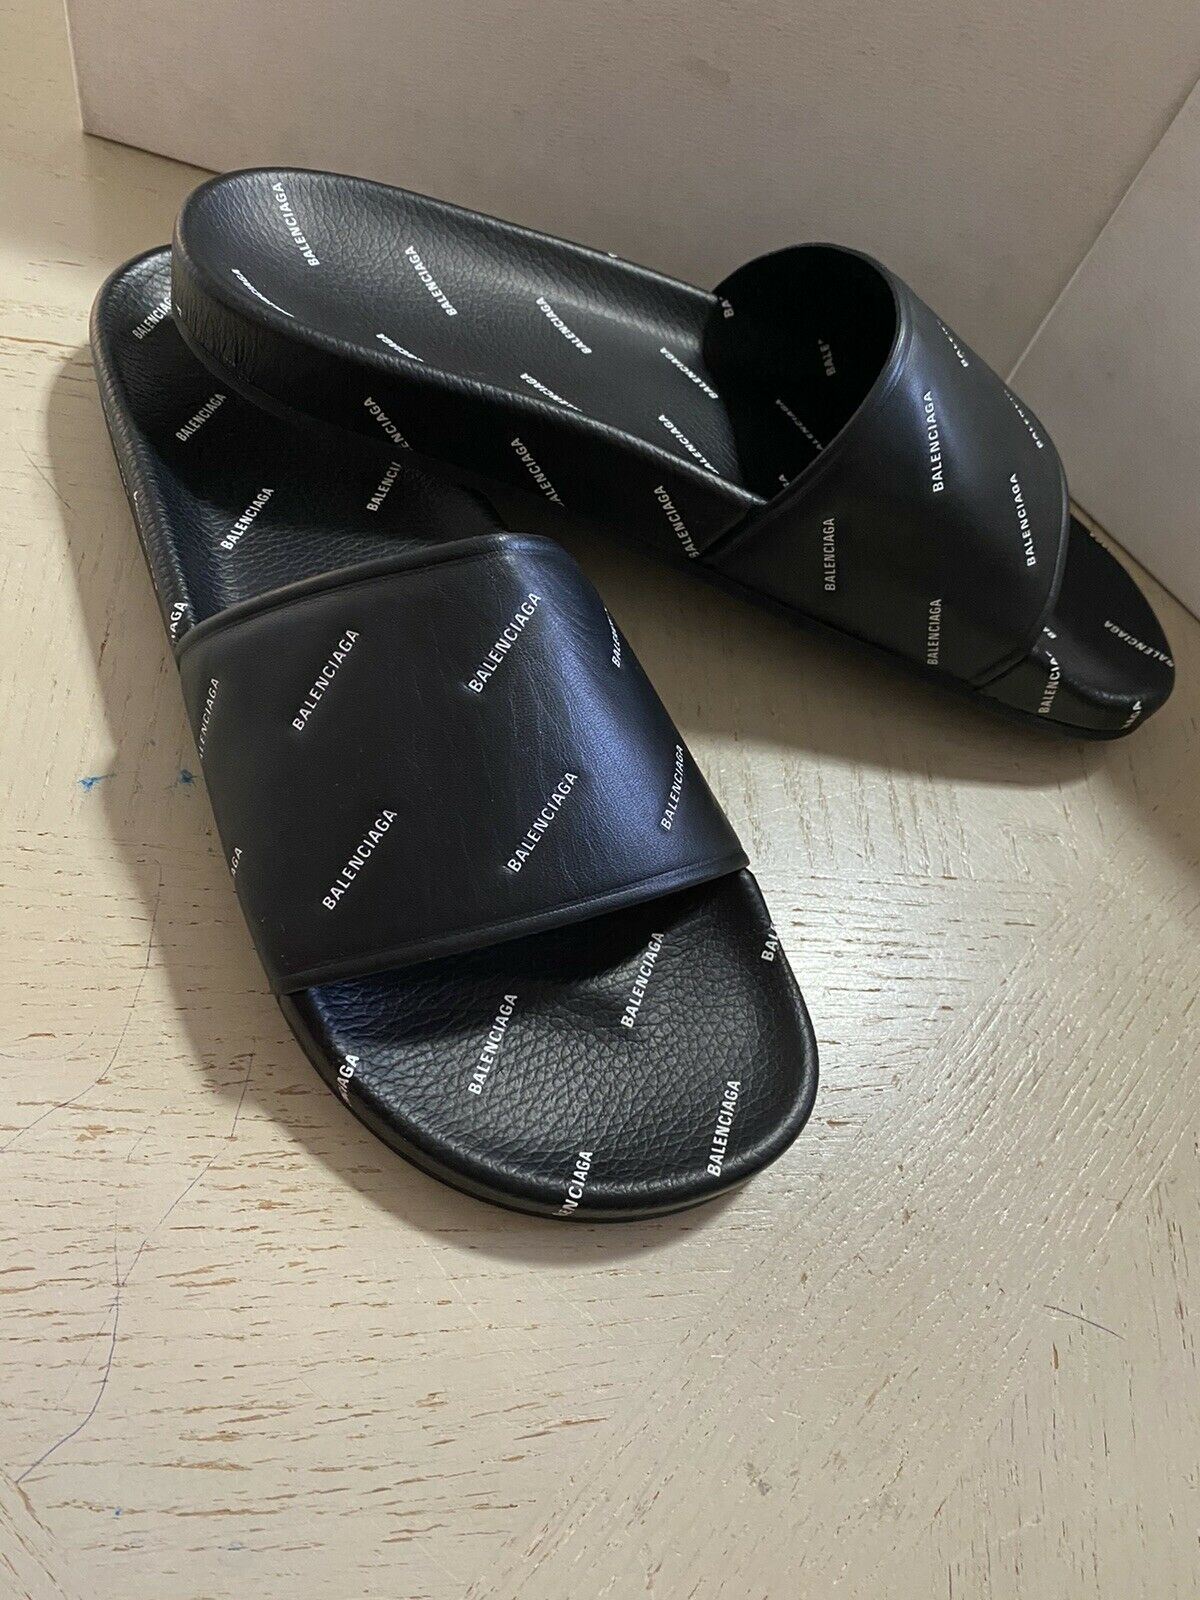 NIB $ 595 Balenciaga Herren Multilogo Slide Sandale Schuhe Schwarz 13 US/46 Eu Italien